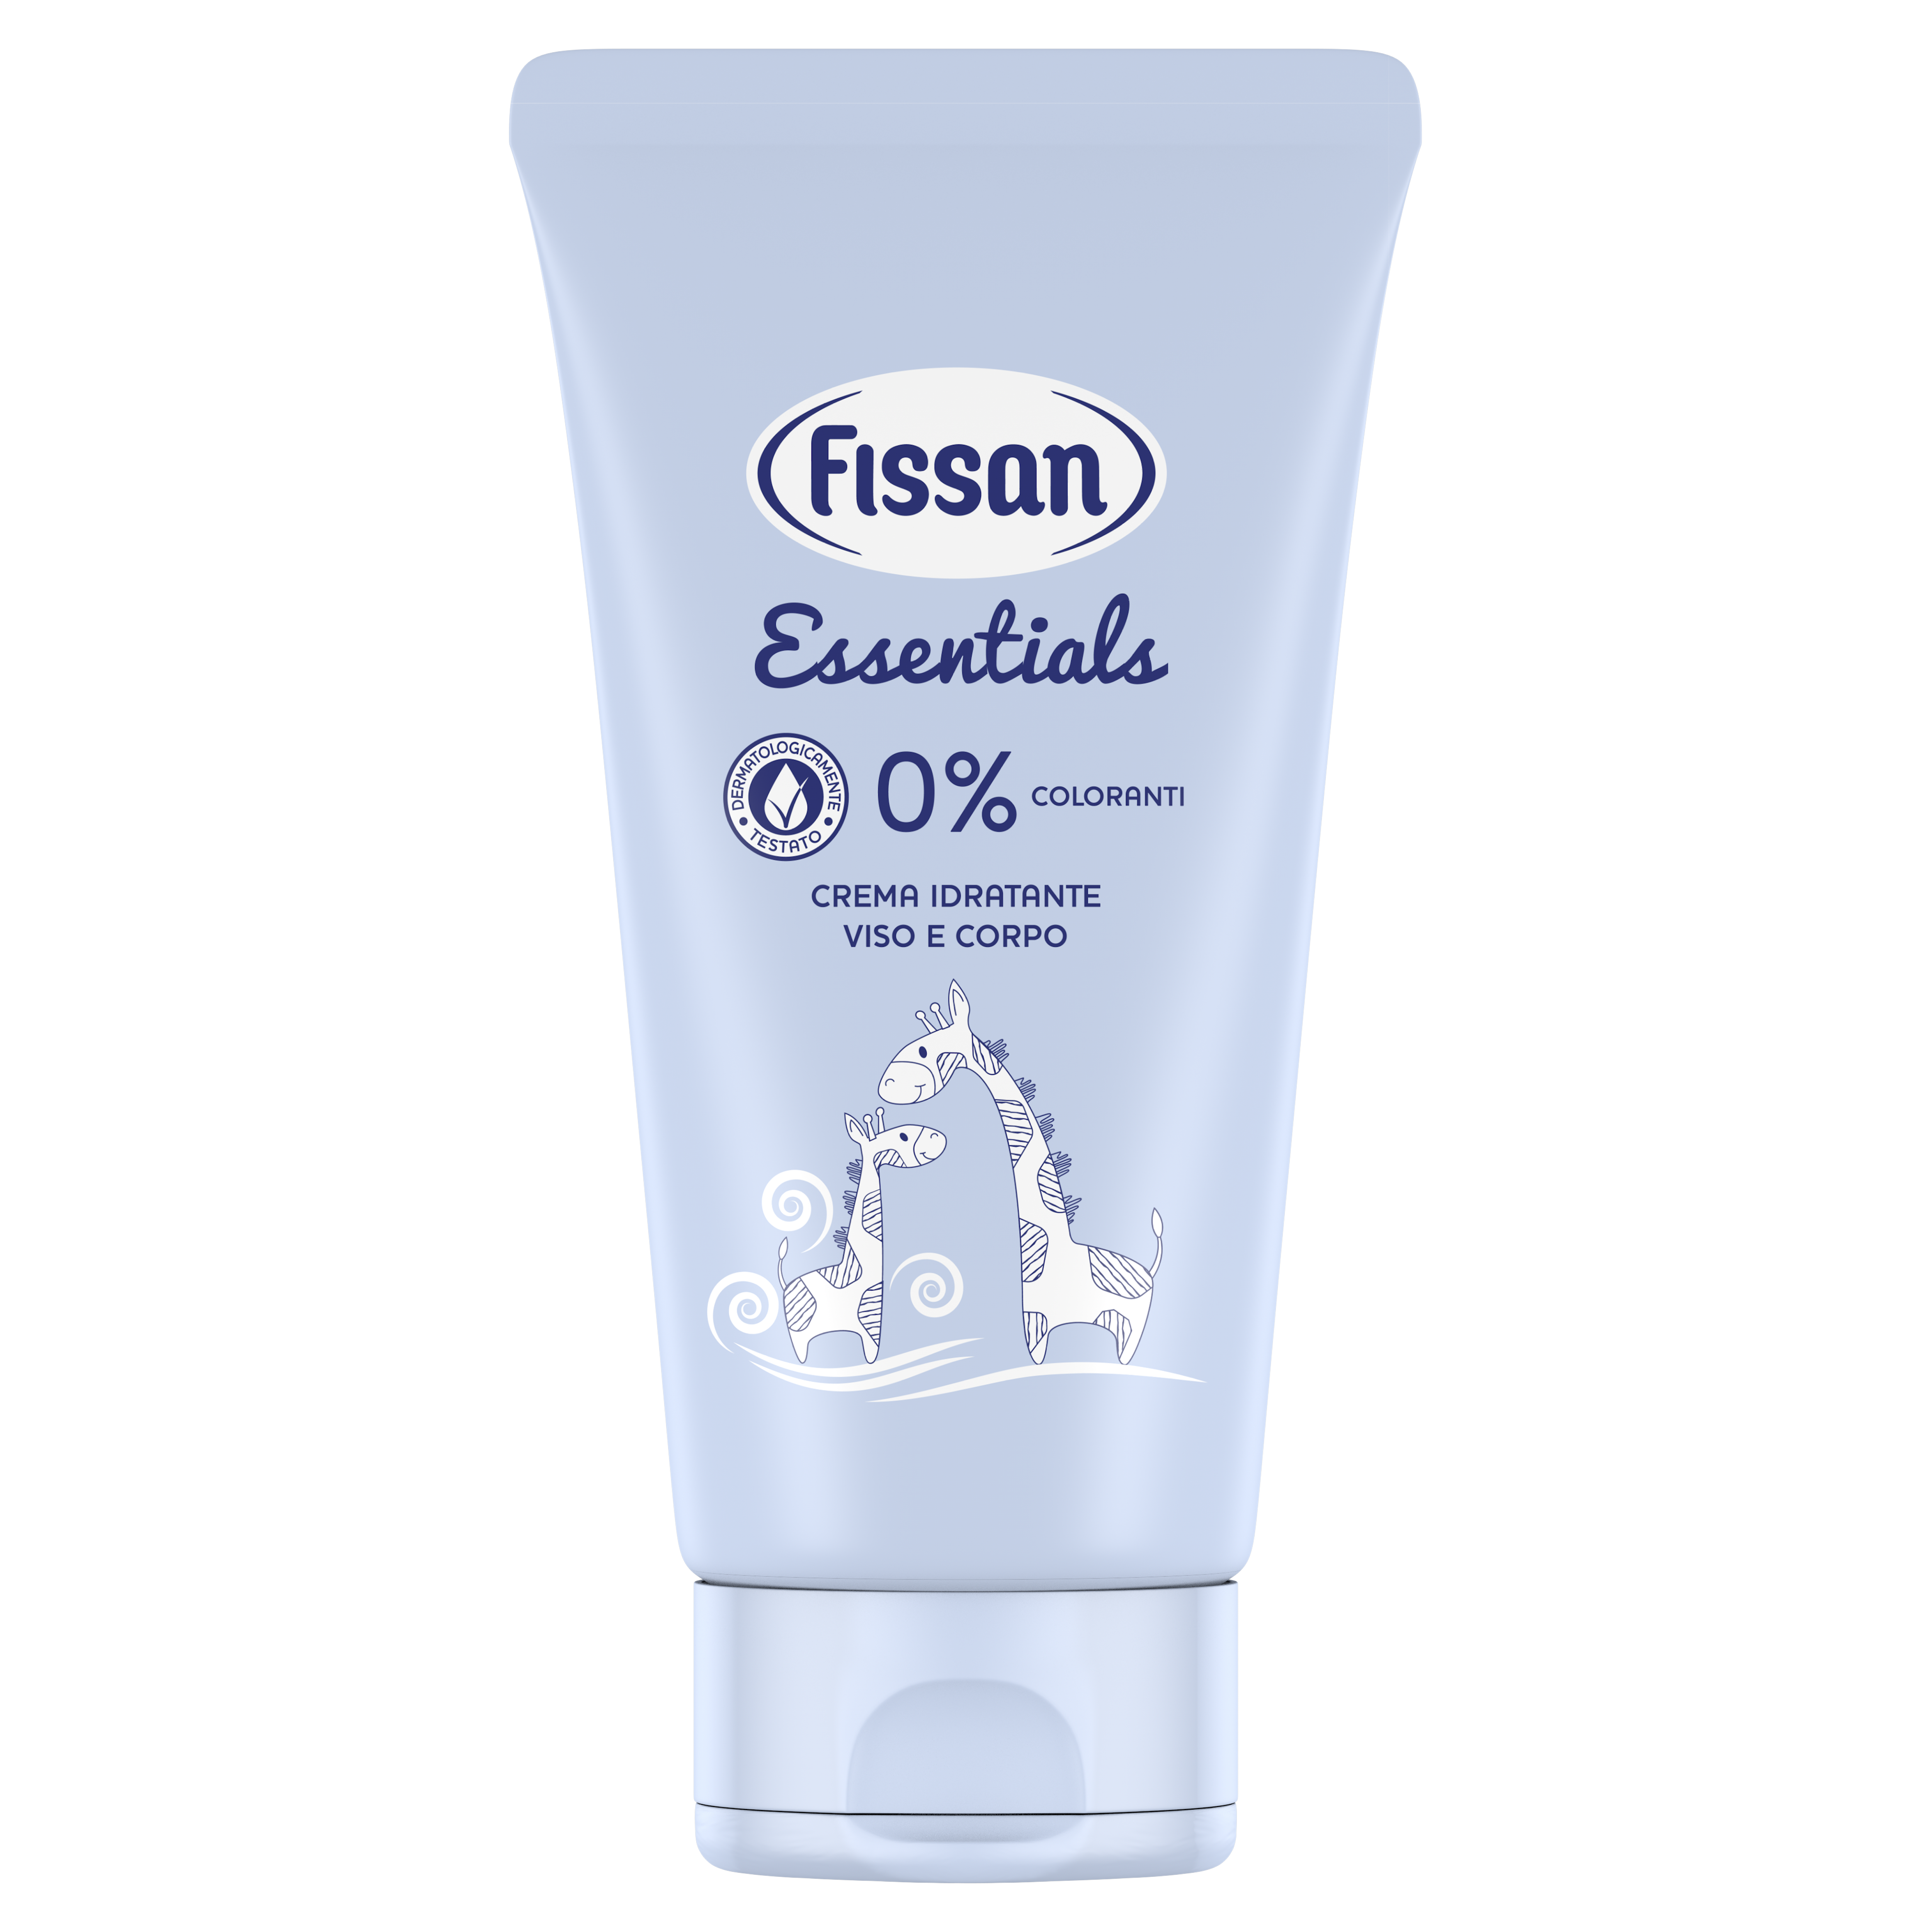 Fissan crema essentials idratante viso e corpo 150ml - Fissan